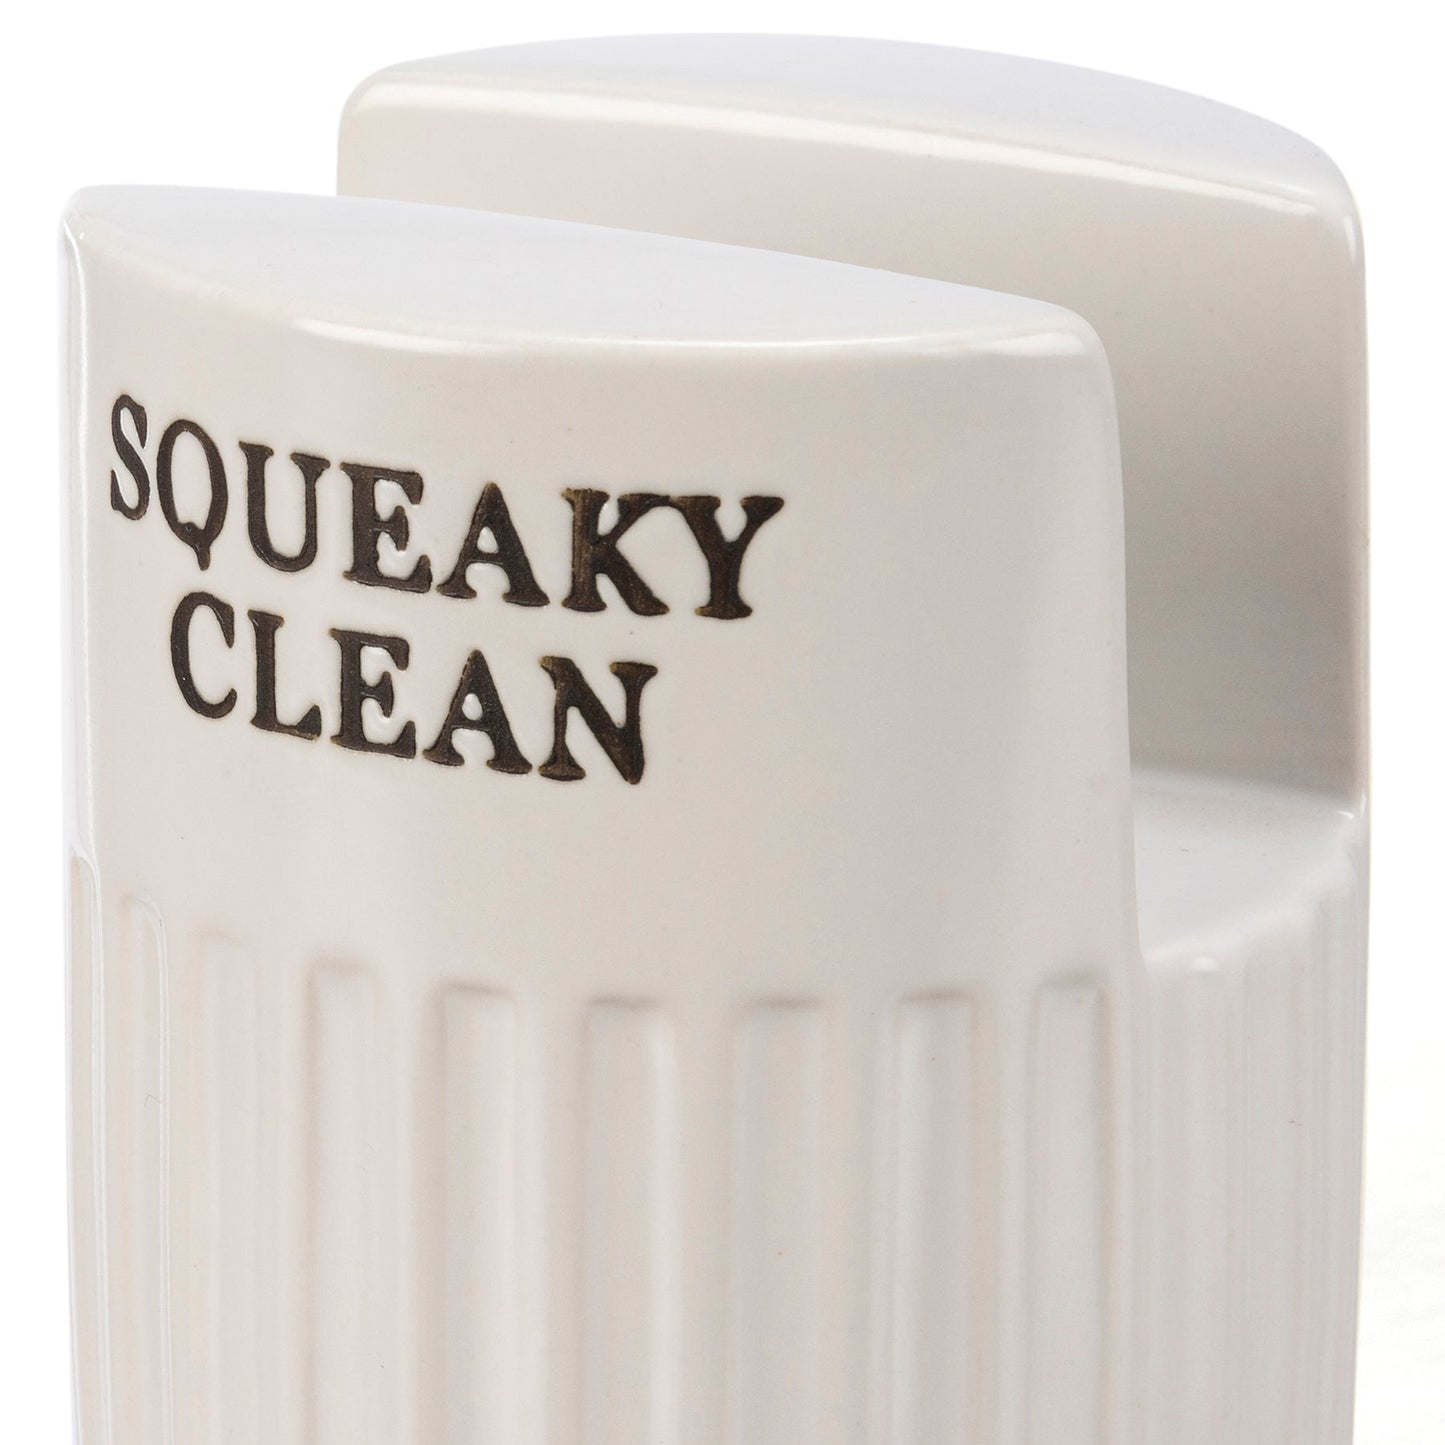 Squeaky Clean Sponge Holder | Minimalist White Kitchenware